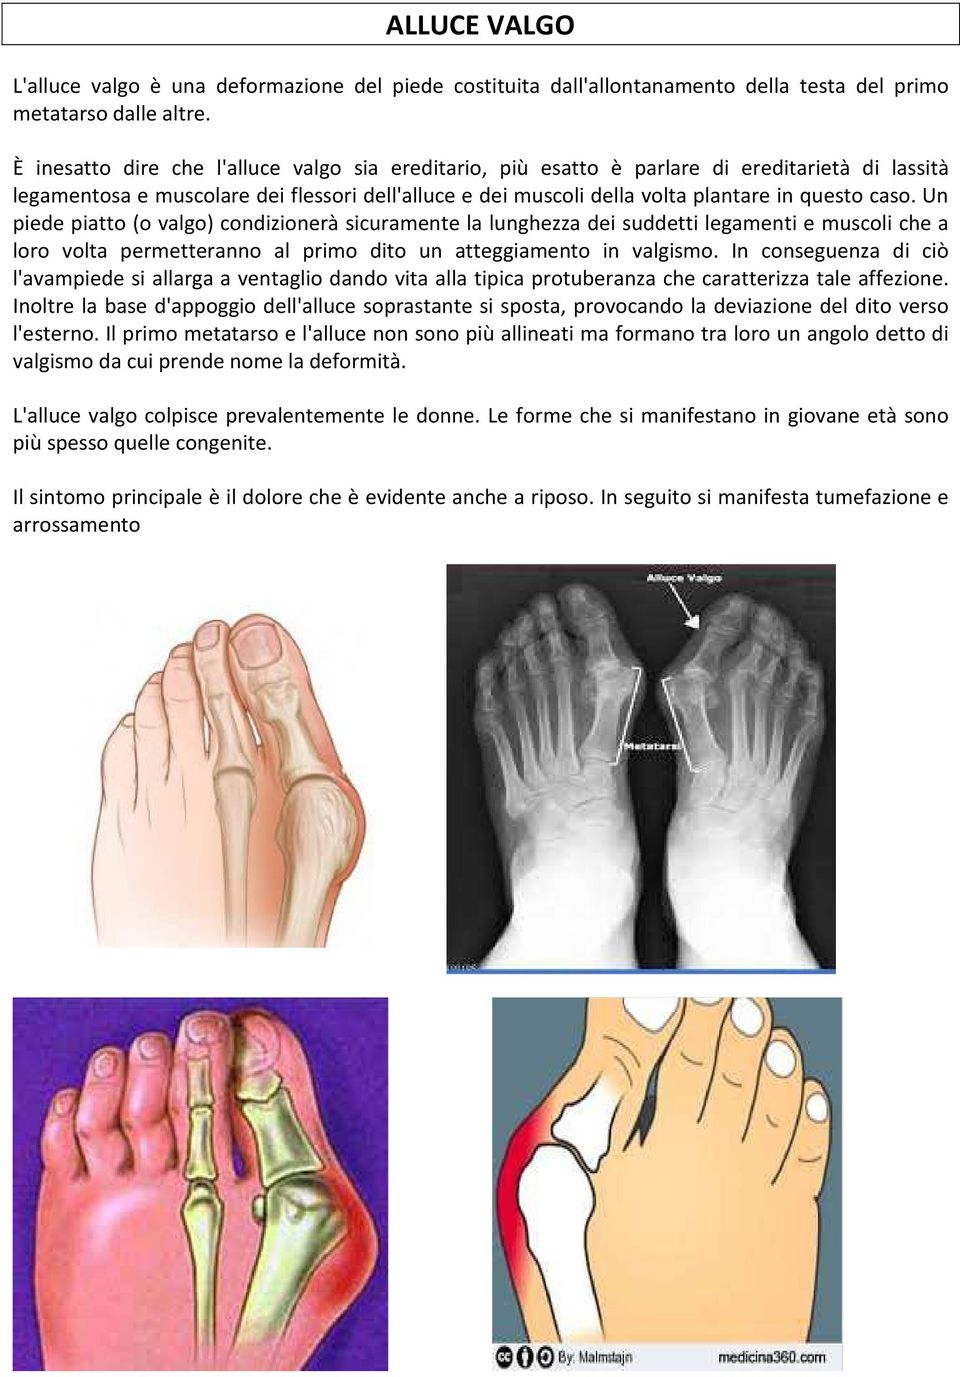 Un piede piatto (o valgo) condizionerà sicuramente la lunghezza dei suddetti legamenti e muscoli che a loro volta permetteranno al primo dito un atteggiamento in valgismo.